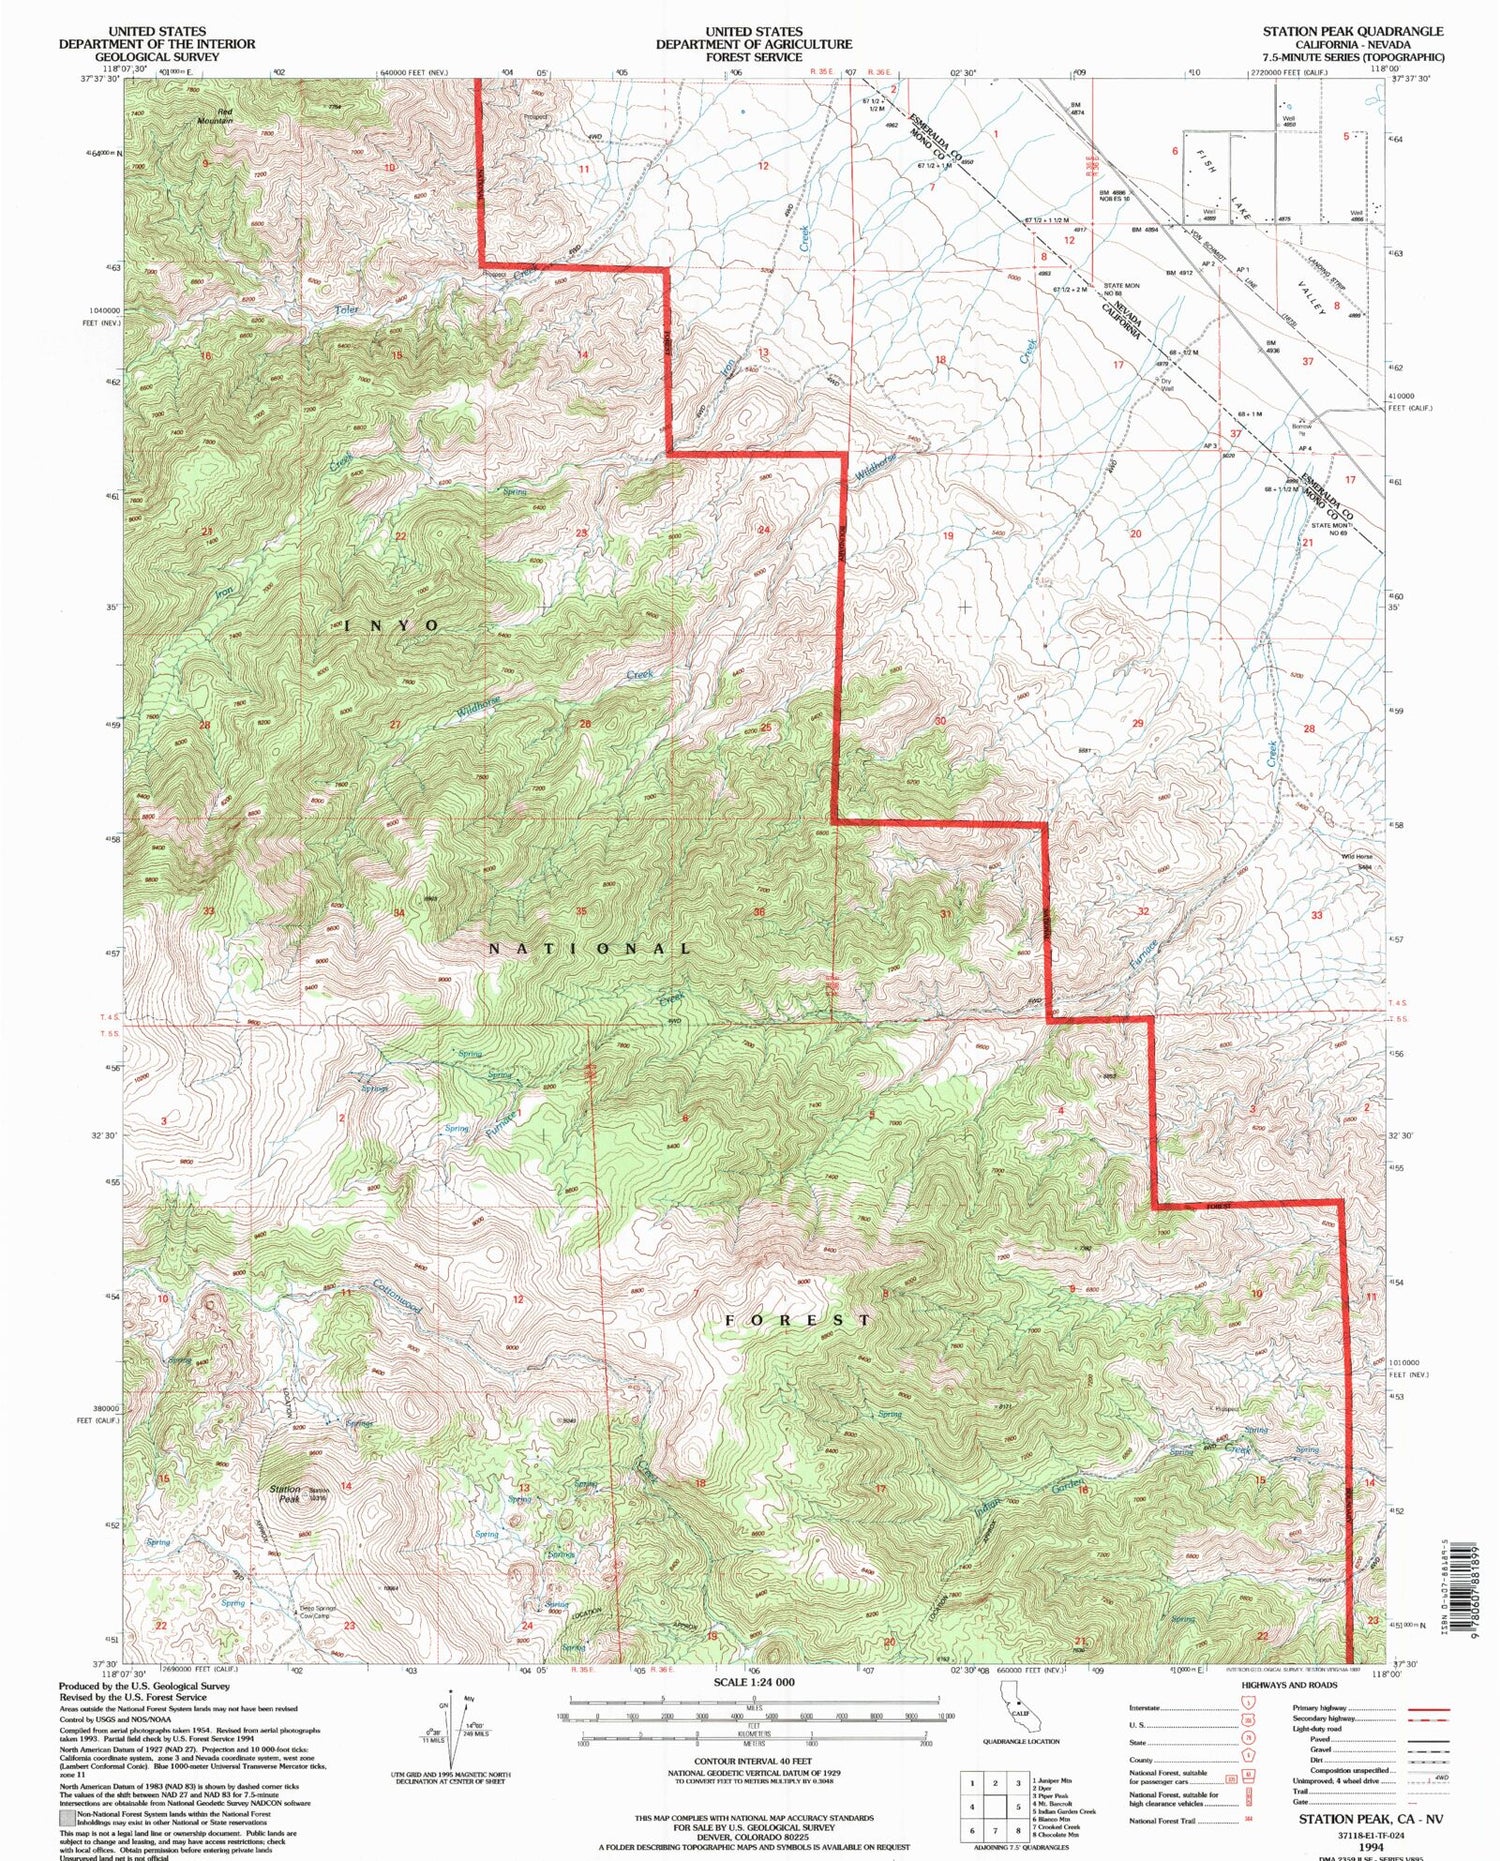 Classic USGS Station Peak California 7.5'x7.5' Topo Map Image